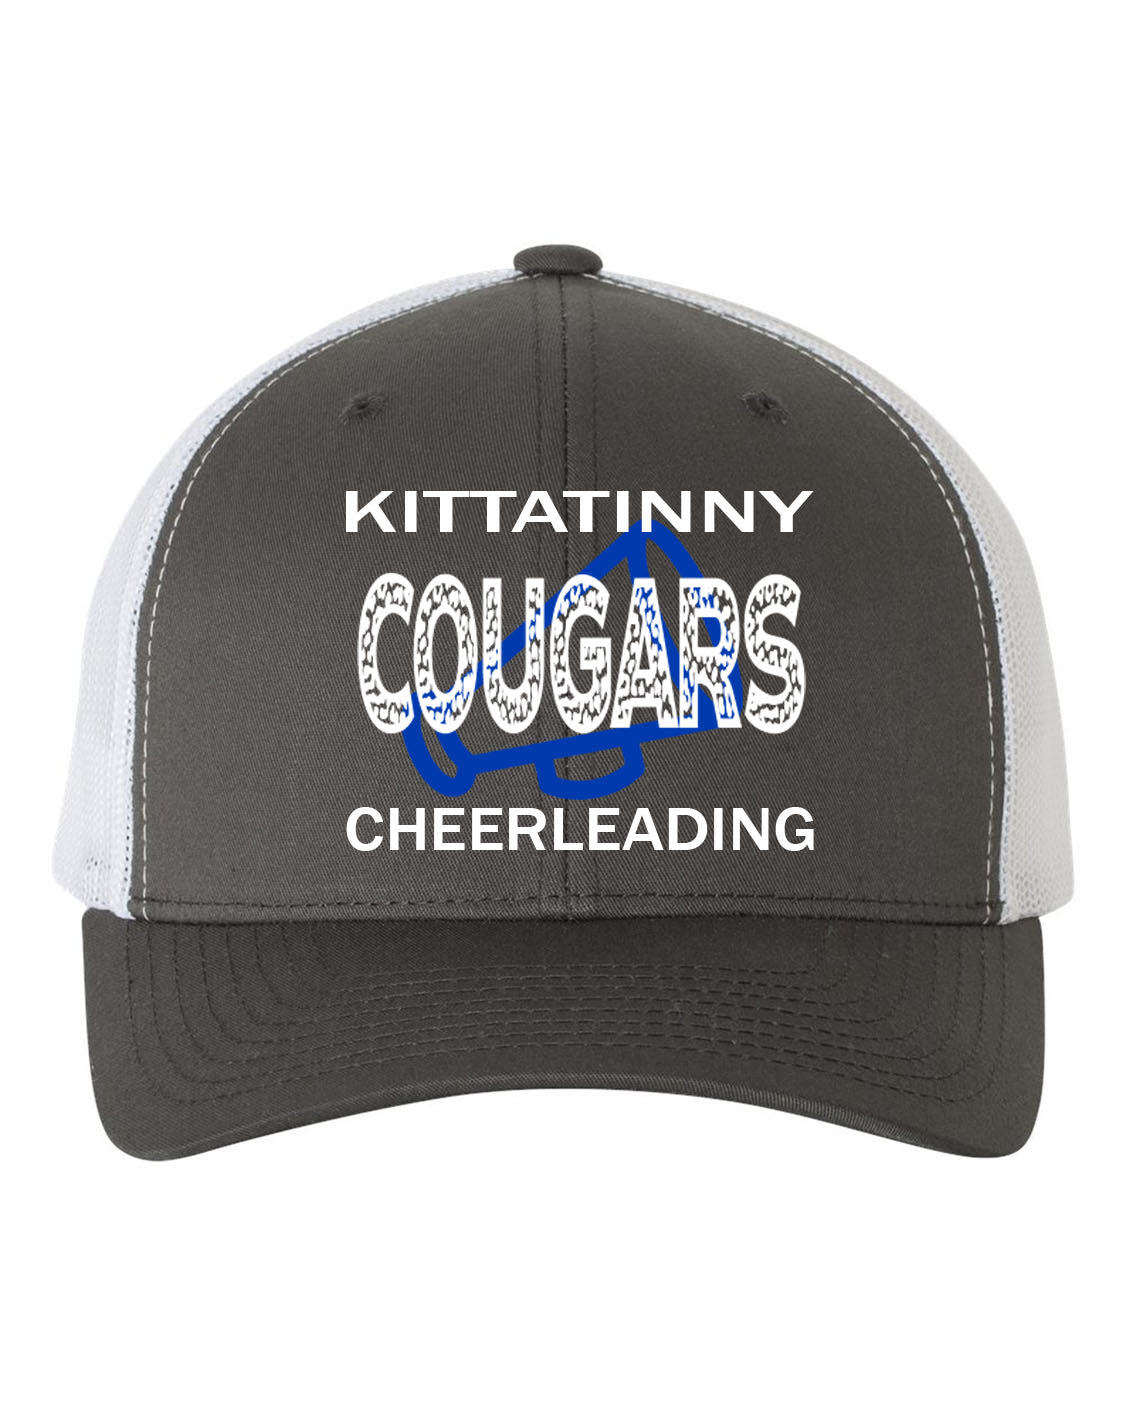 Kittatinny Cheer Design 10 Trucker Hat